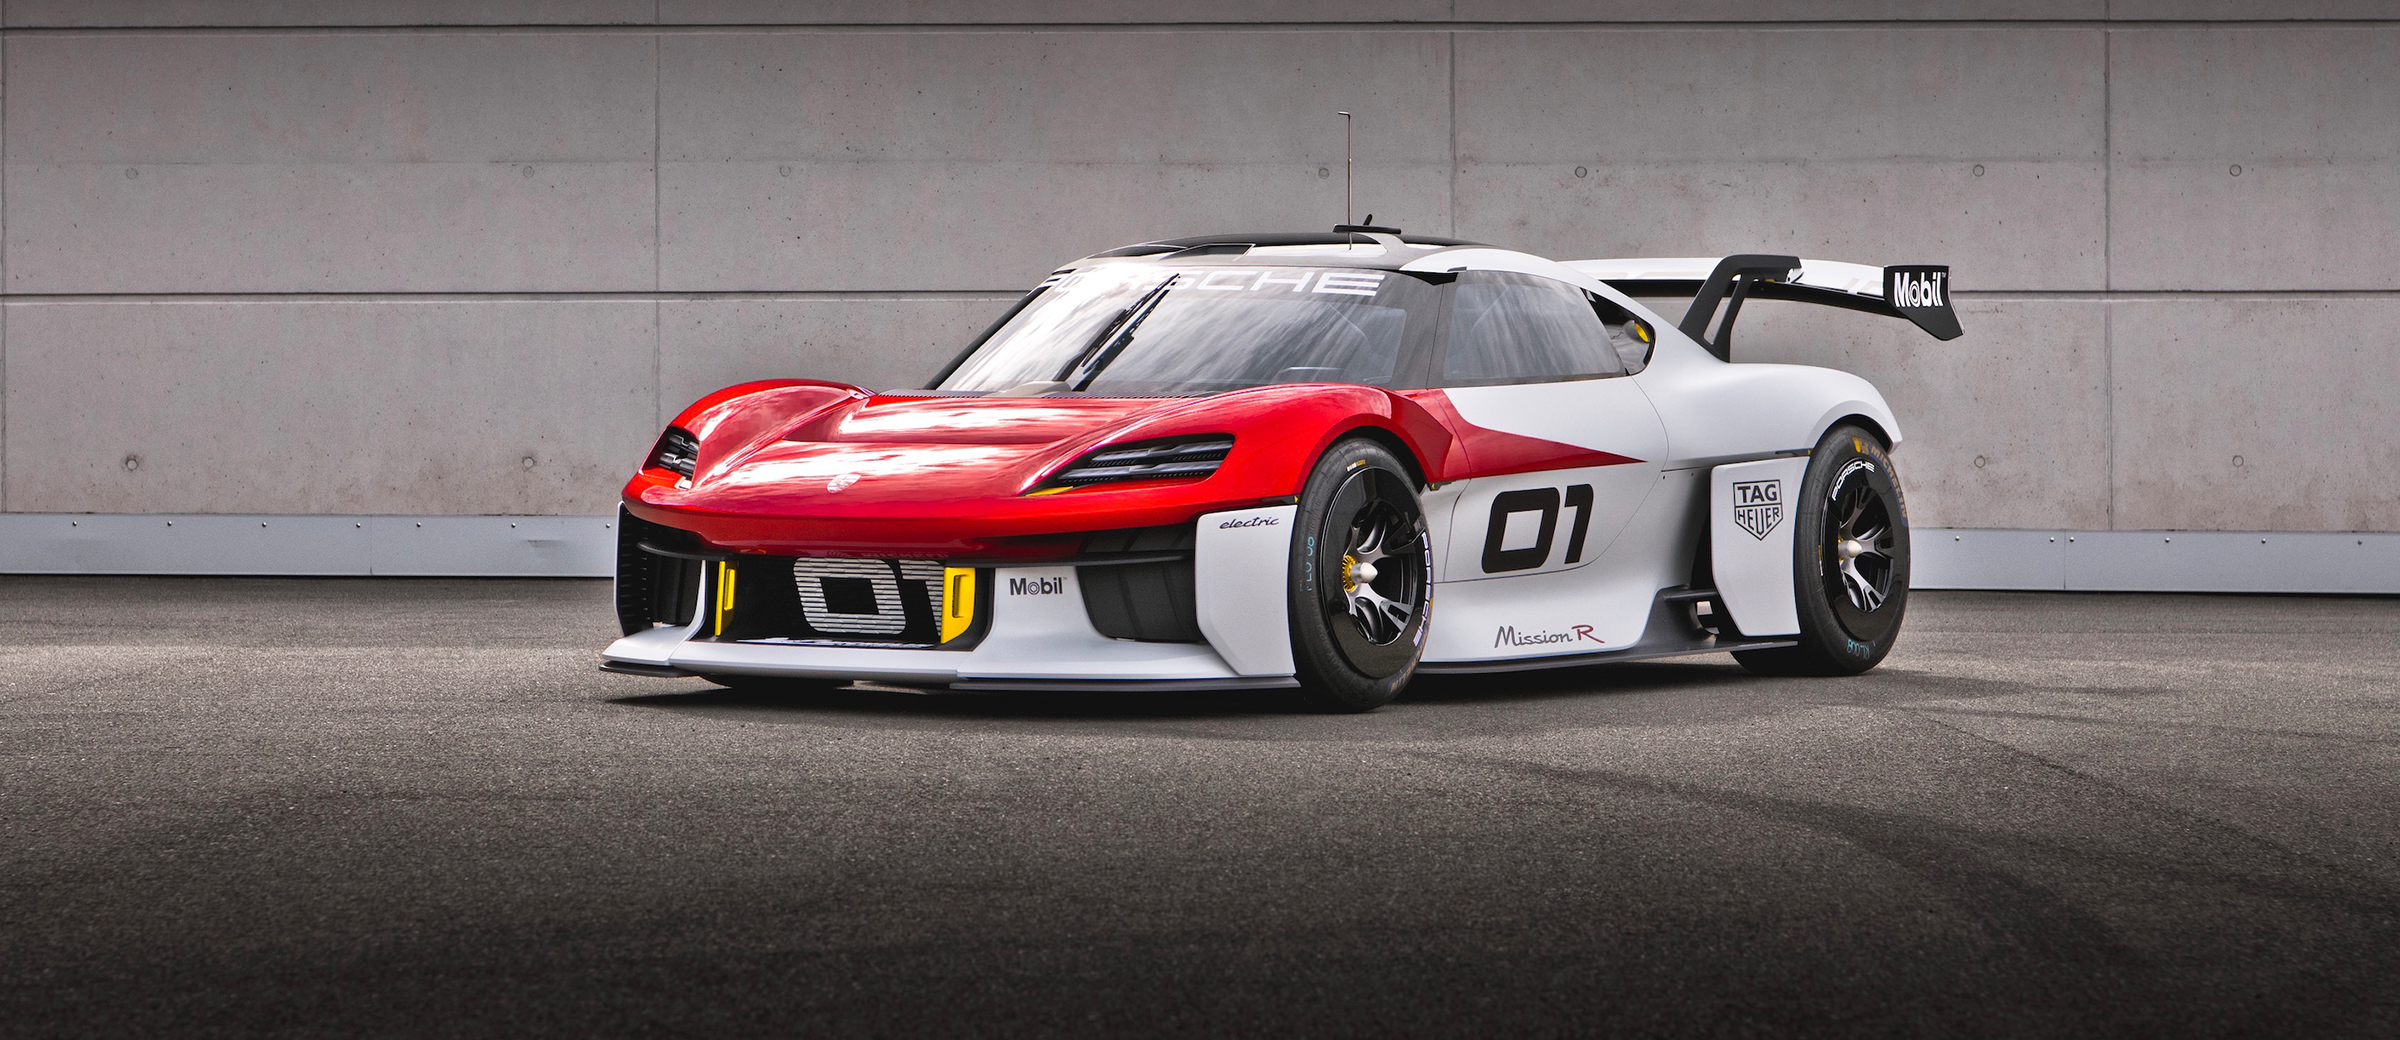 Porsche Reveals Its Future-Driven Mission R Concept Car